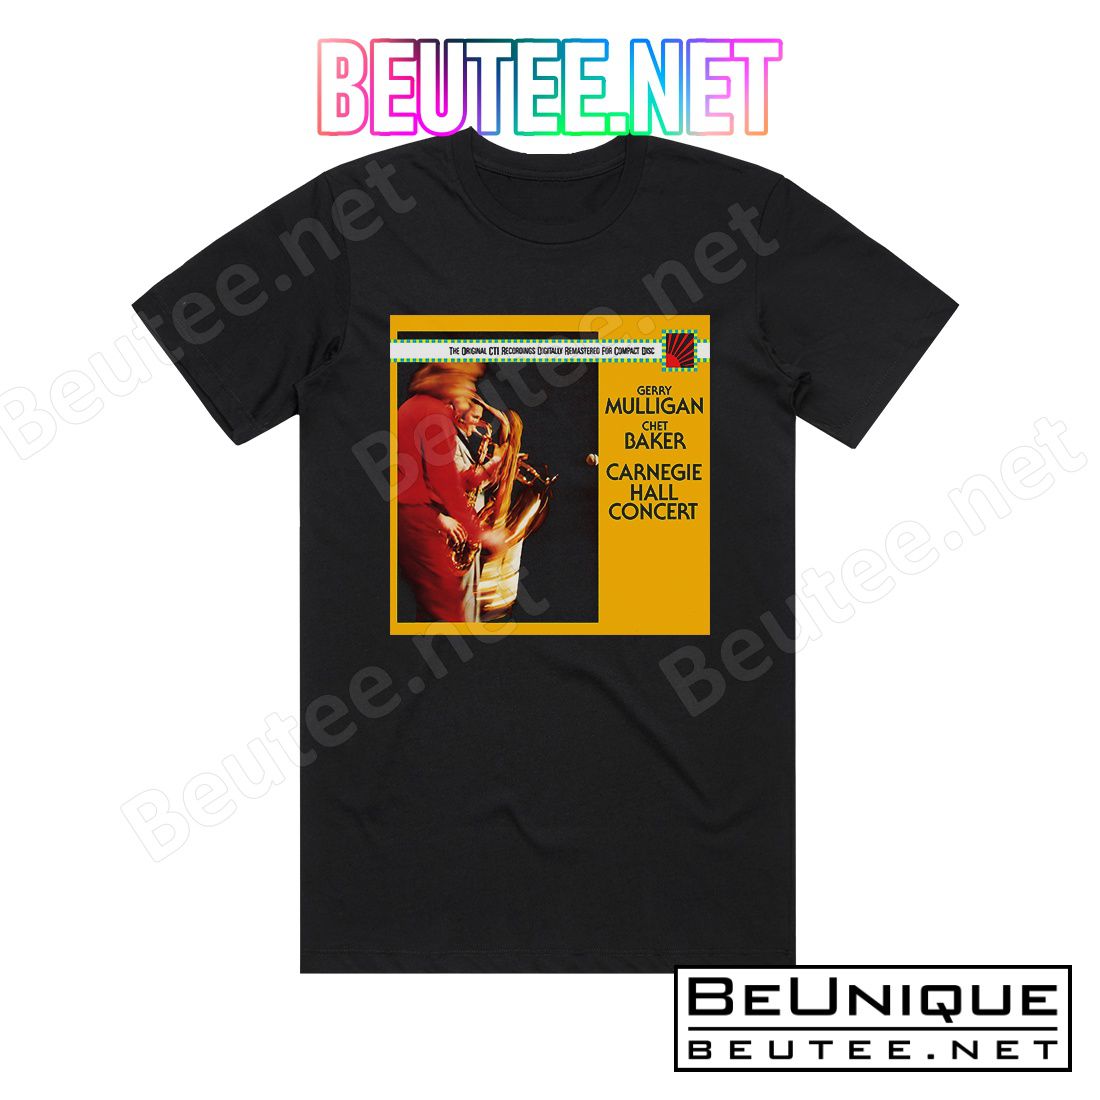 Chet Baker Carnegie Hall Concert Album Cover T-Shirt